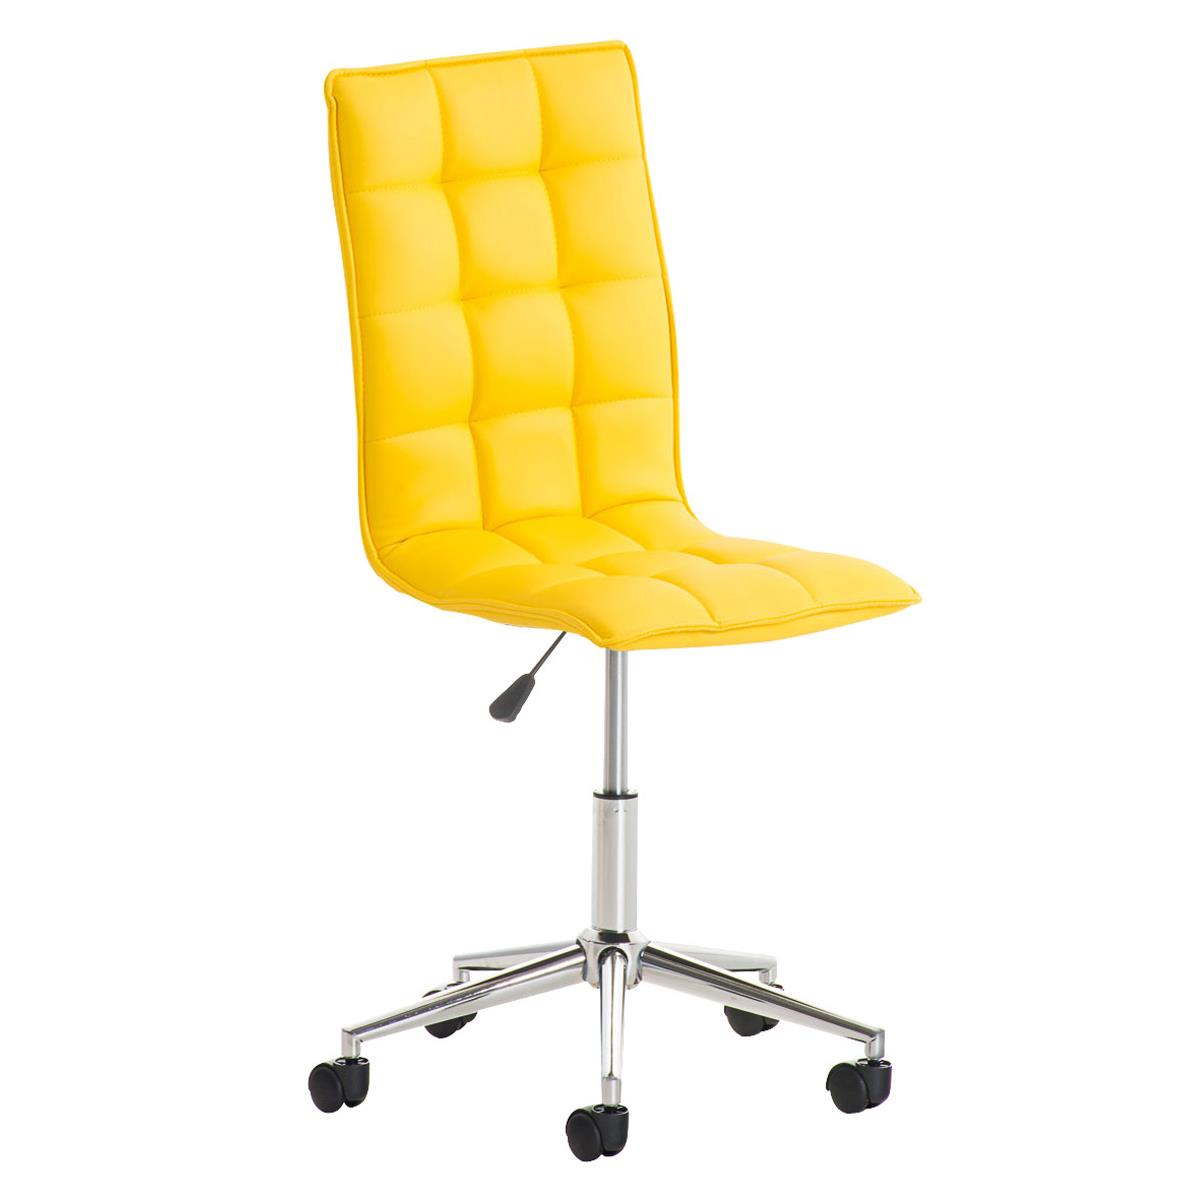 Chaise de bureau BULGARI, Design Sublime, Piétement Métallique, revêtement en Cuir, Jaune